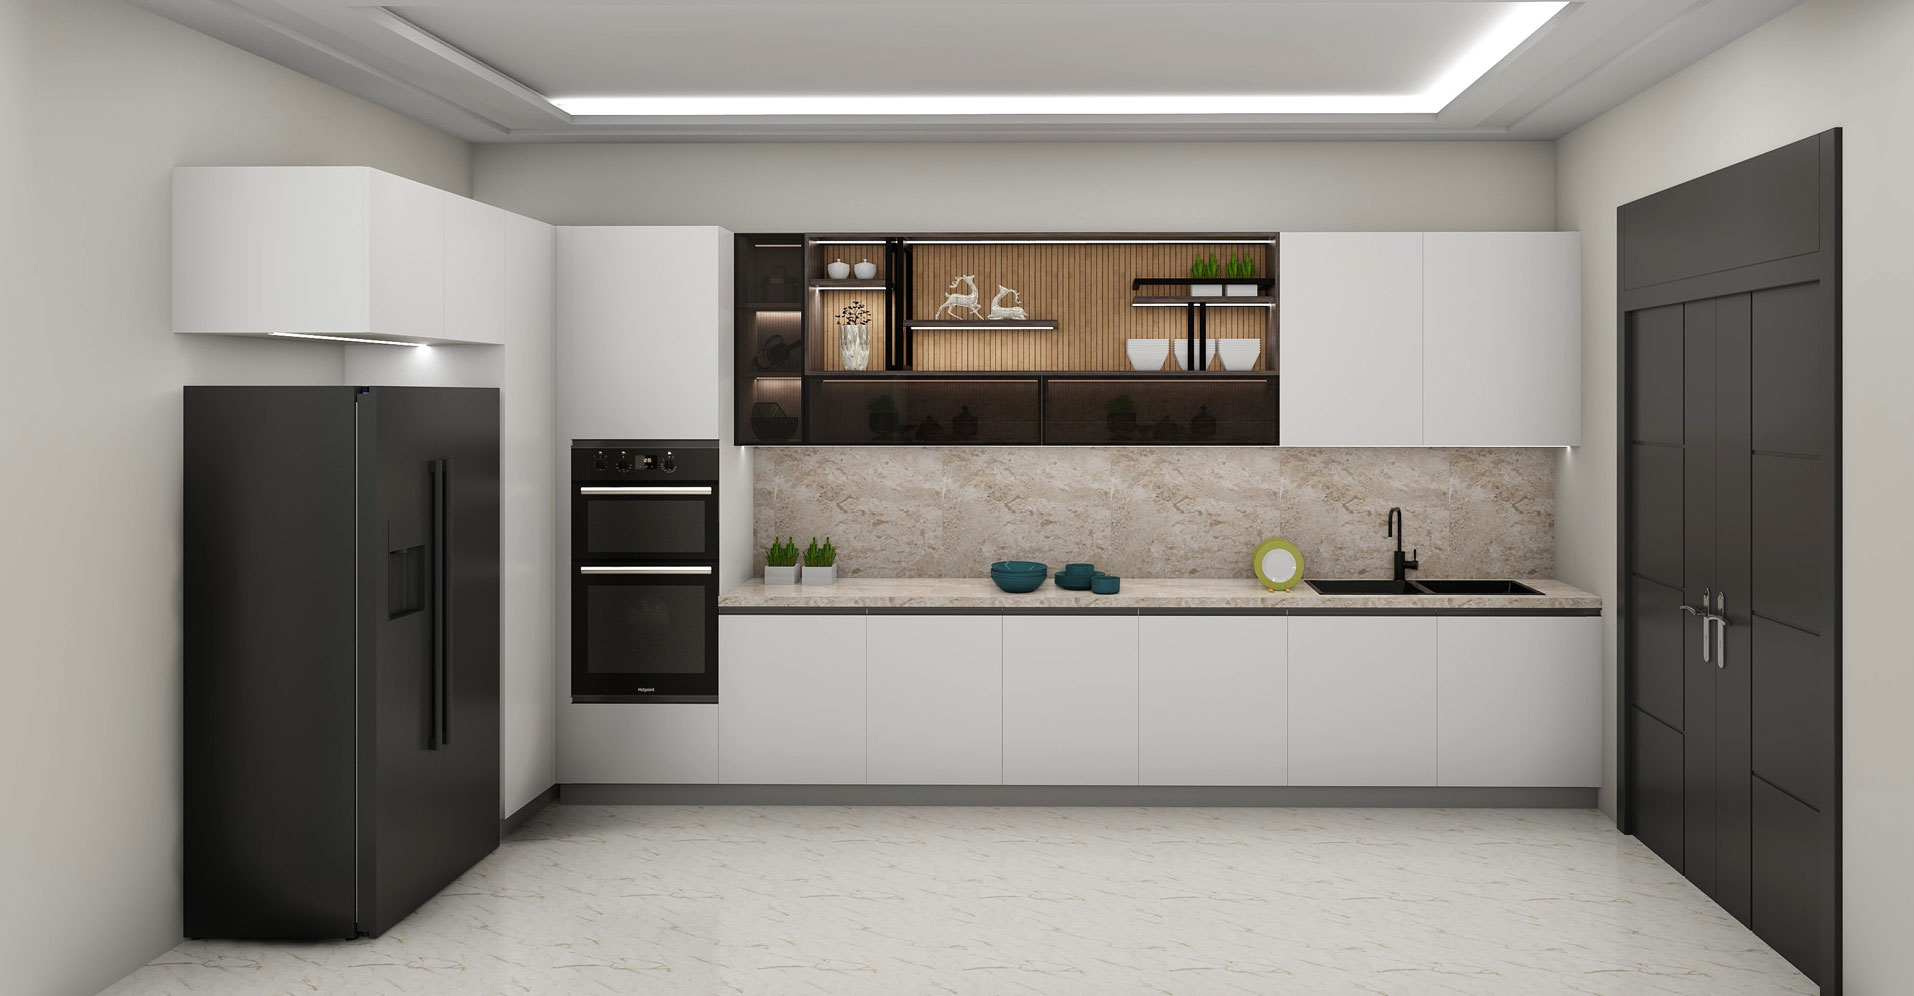 Ideas For a Spacious Modular kitchen Design